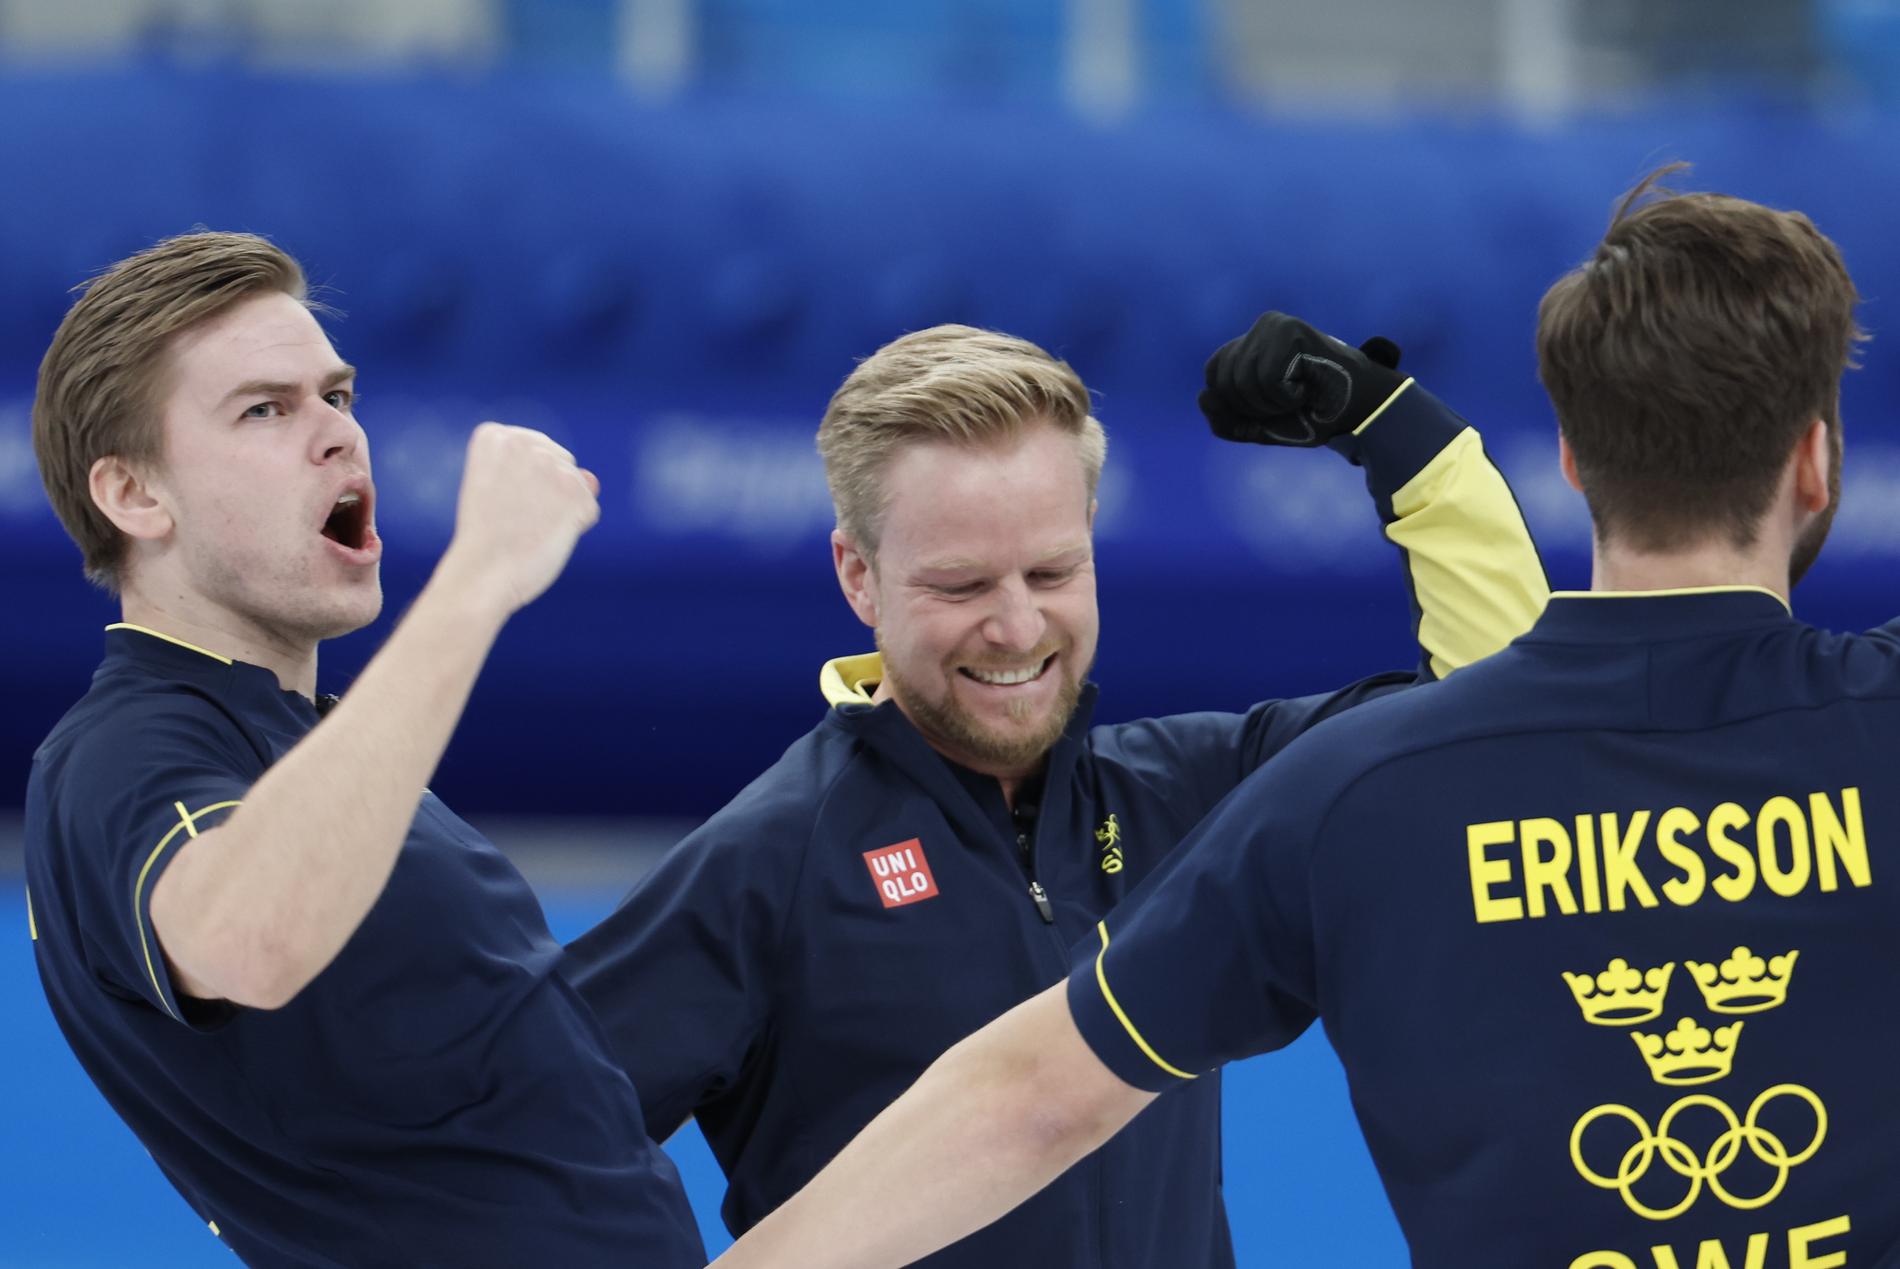 Christoffer Sundgren, Niklas Edin och Oskar Eriksson jublar efter OS-finalen i curling.